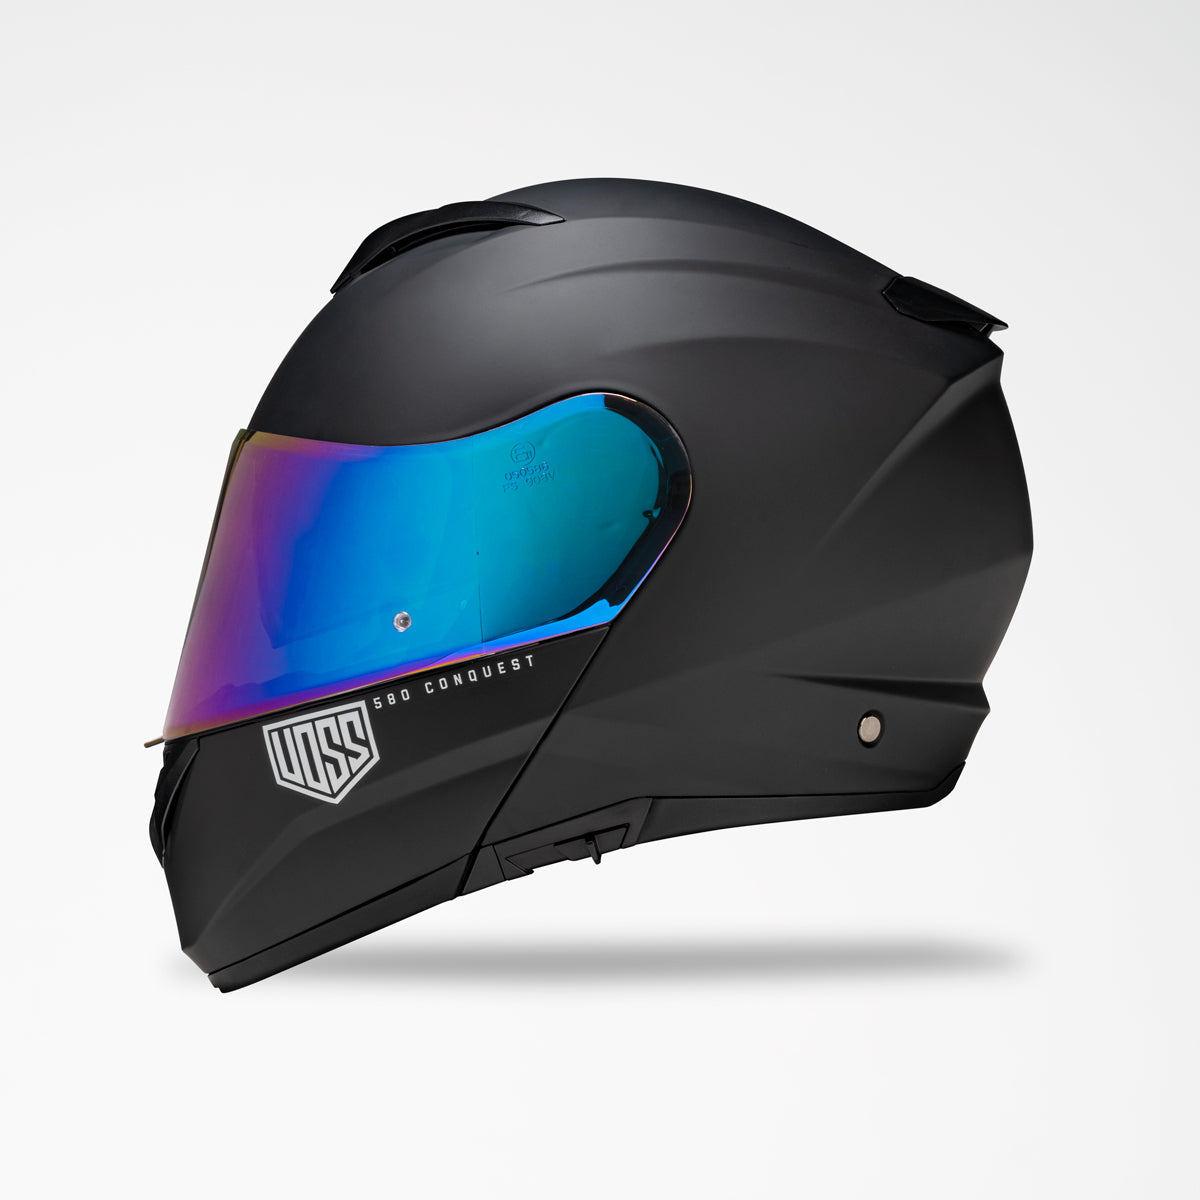 VOSS 580 CONQUEST BLACK HELMET - Voss Helmets